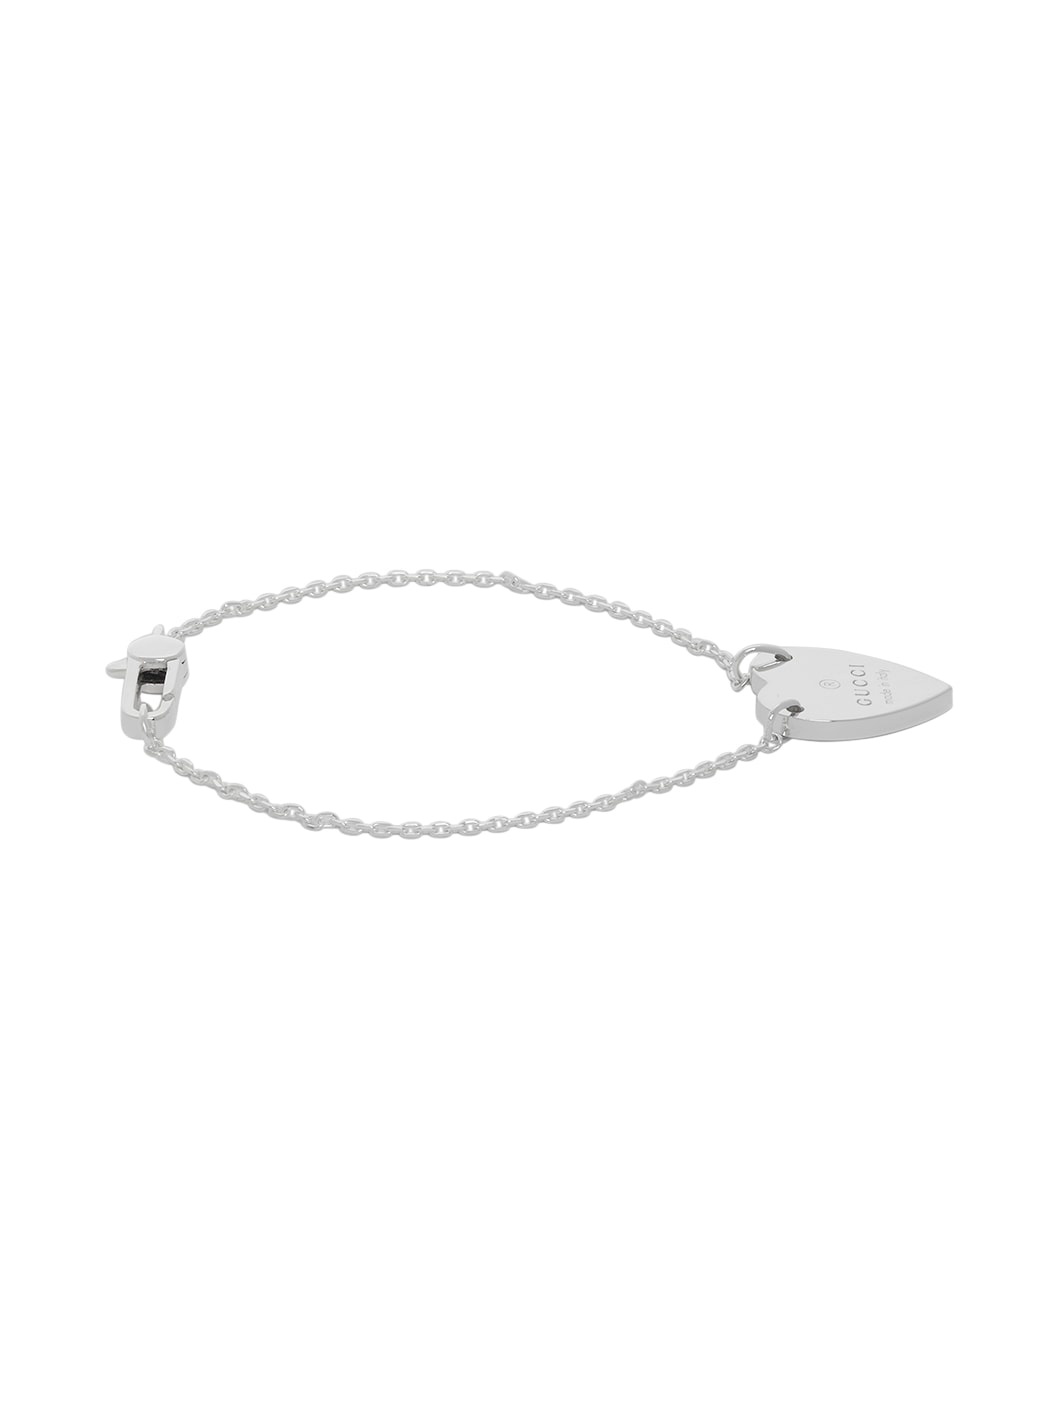 Silver Trademark Heart Bracelet - 5